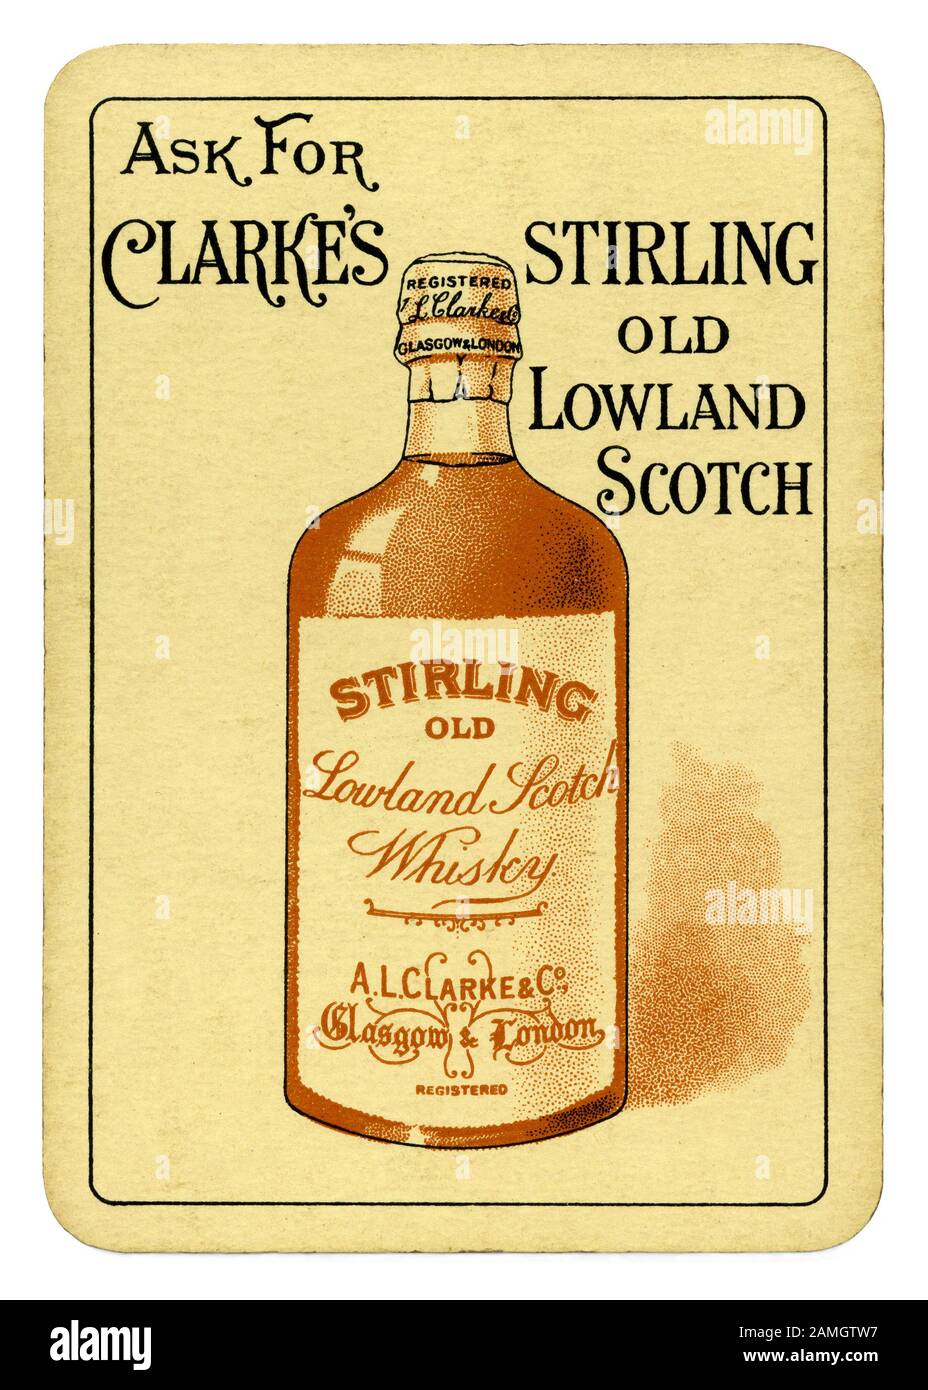 Verso d'un vieux jeu de carte avec une illustration d'une bouteille de scotch - à partir d'un jeu de cartes de promotion d'un Clarke et l'ancienne Co Stirling Lowland Scotch whisky c.1910. La société a été fondée à Glasgow et Londres. Banque D'Images